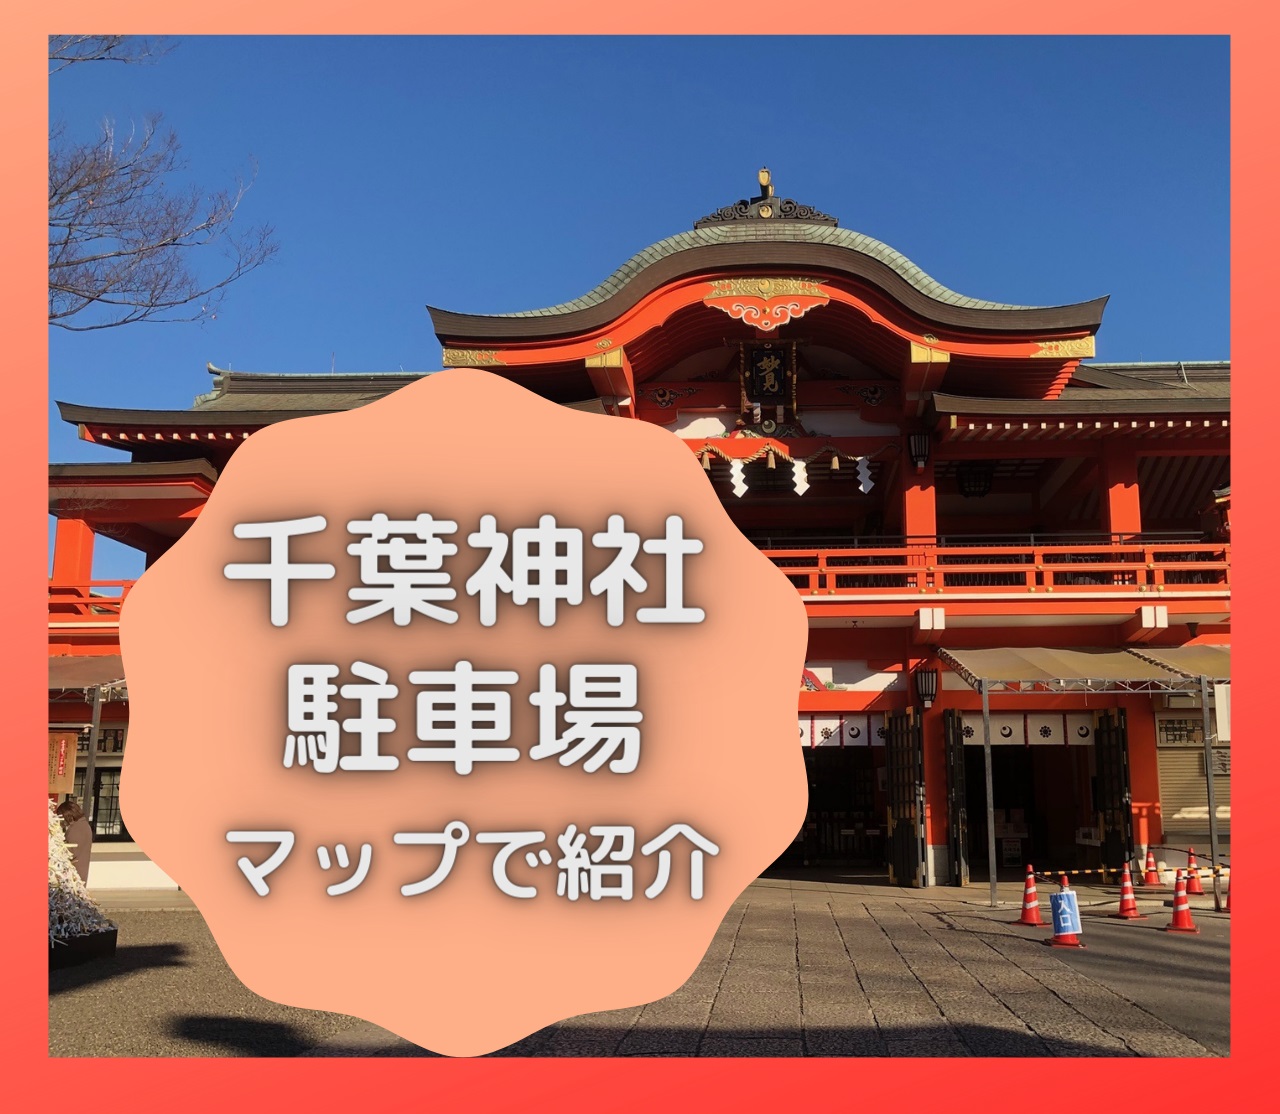 千葉神社22 ご利益と見どころは 駐車場もマップで紹介します かごめchannel